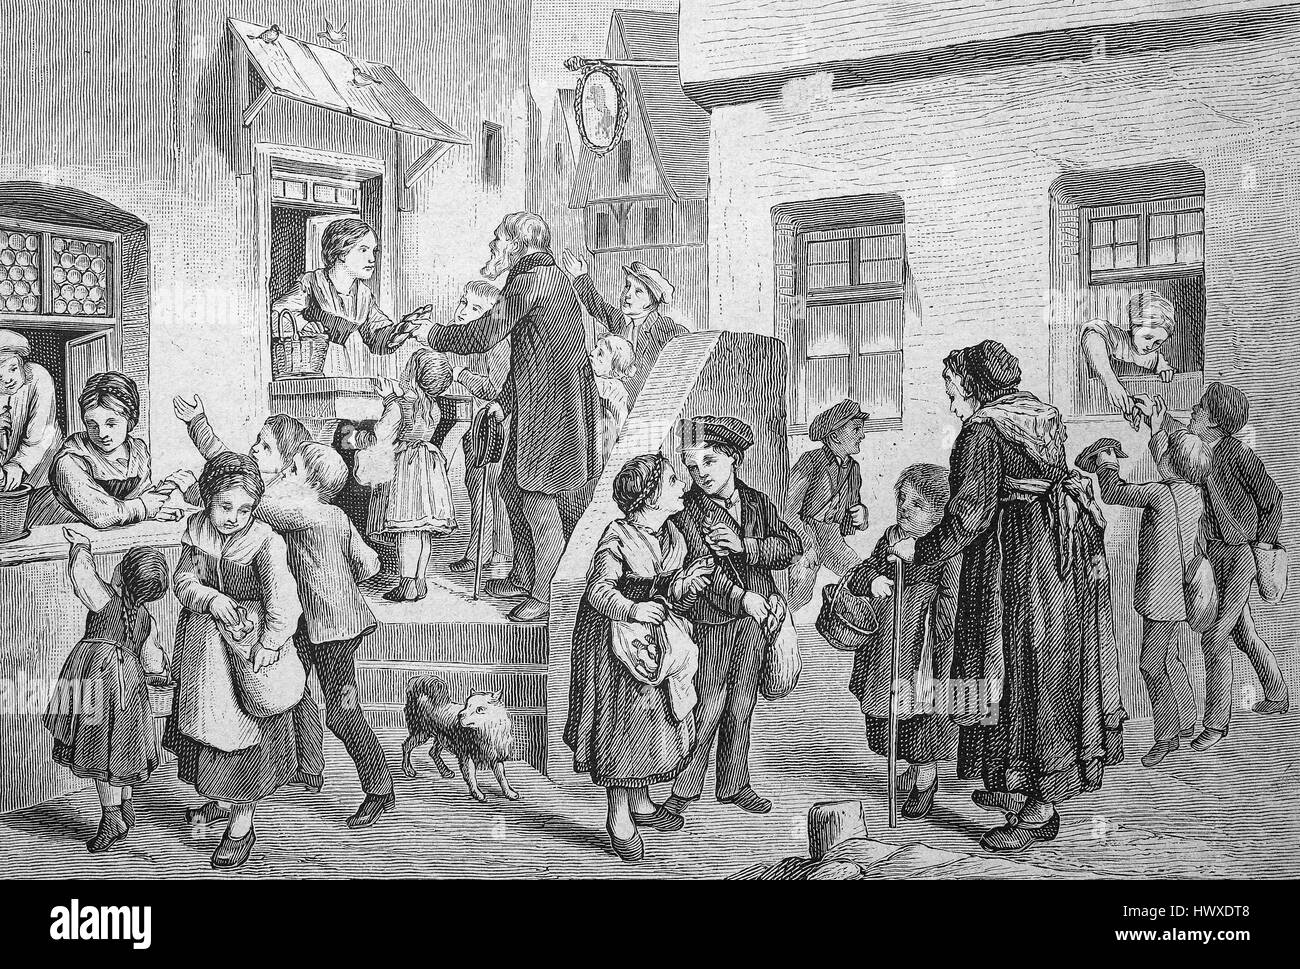 Il Spitzeltag, Spitzel è la forma di una pasticceria in Media Franconia. Vista in un villaggio, i bambini ricevono i doni da adulti, personalizzati o tradizione popolare, la Germania, la riproduzione di una immagine, la xilografia a partire dall'anno 1881, digitale migliorata Foto Stock